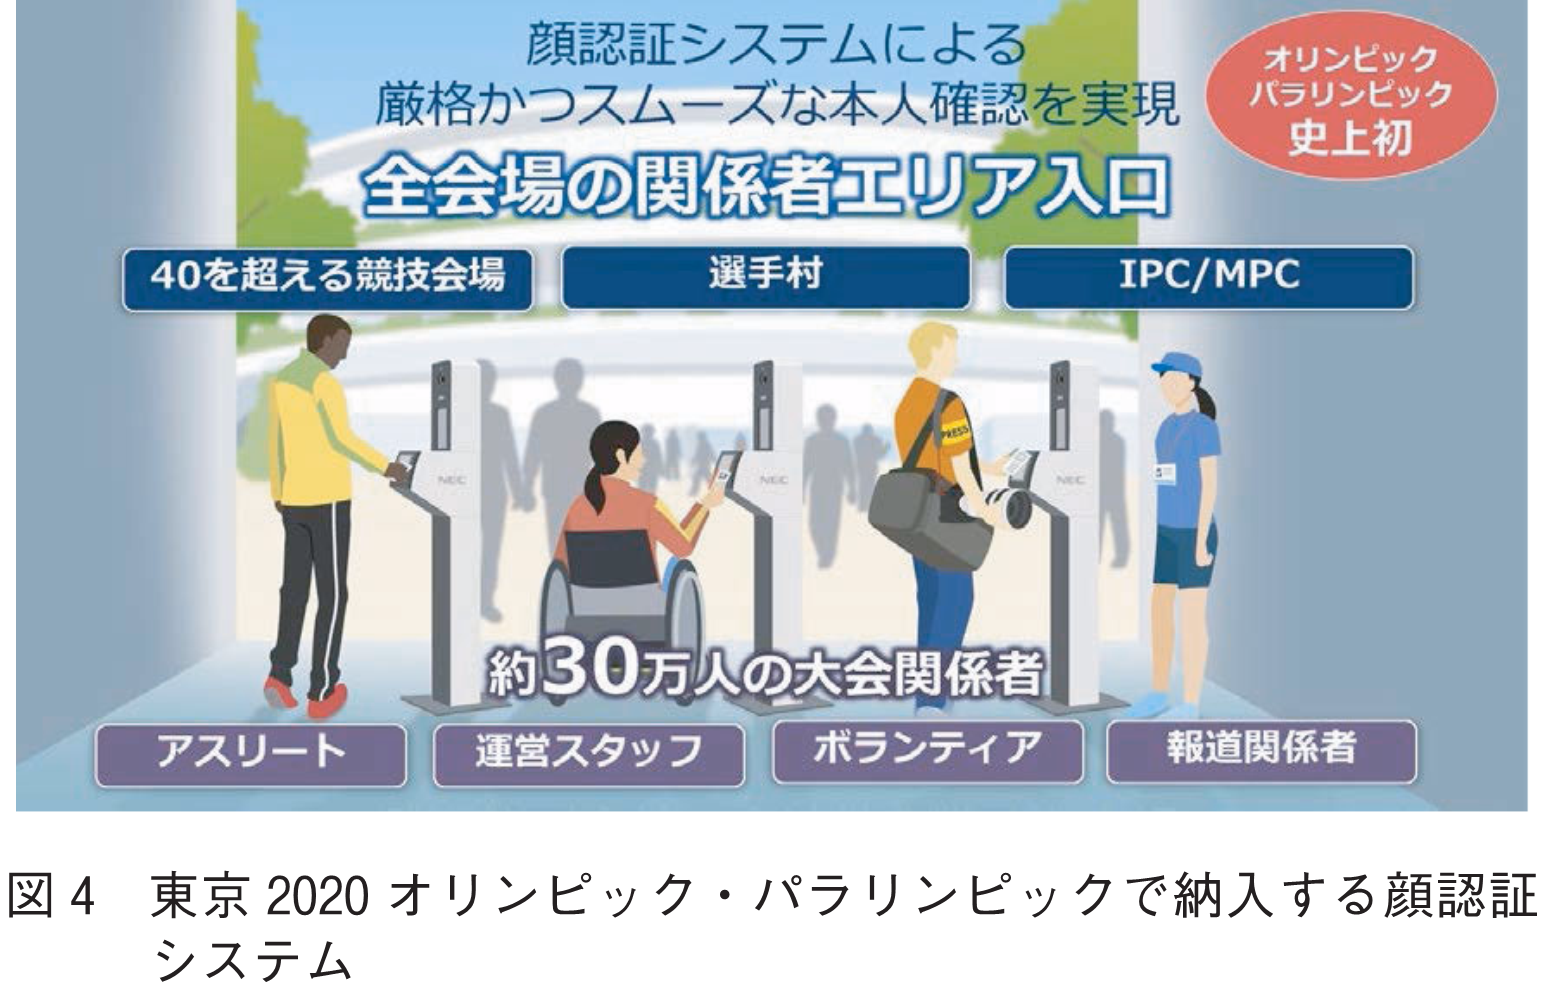 図4　東京2020オリンピック・パラリンピックで納入する顔認証システム